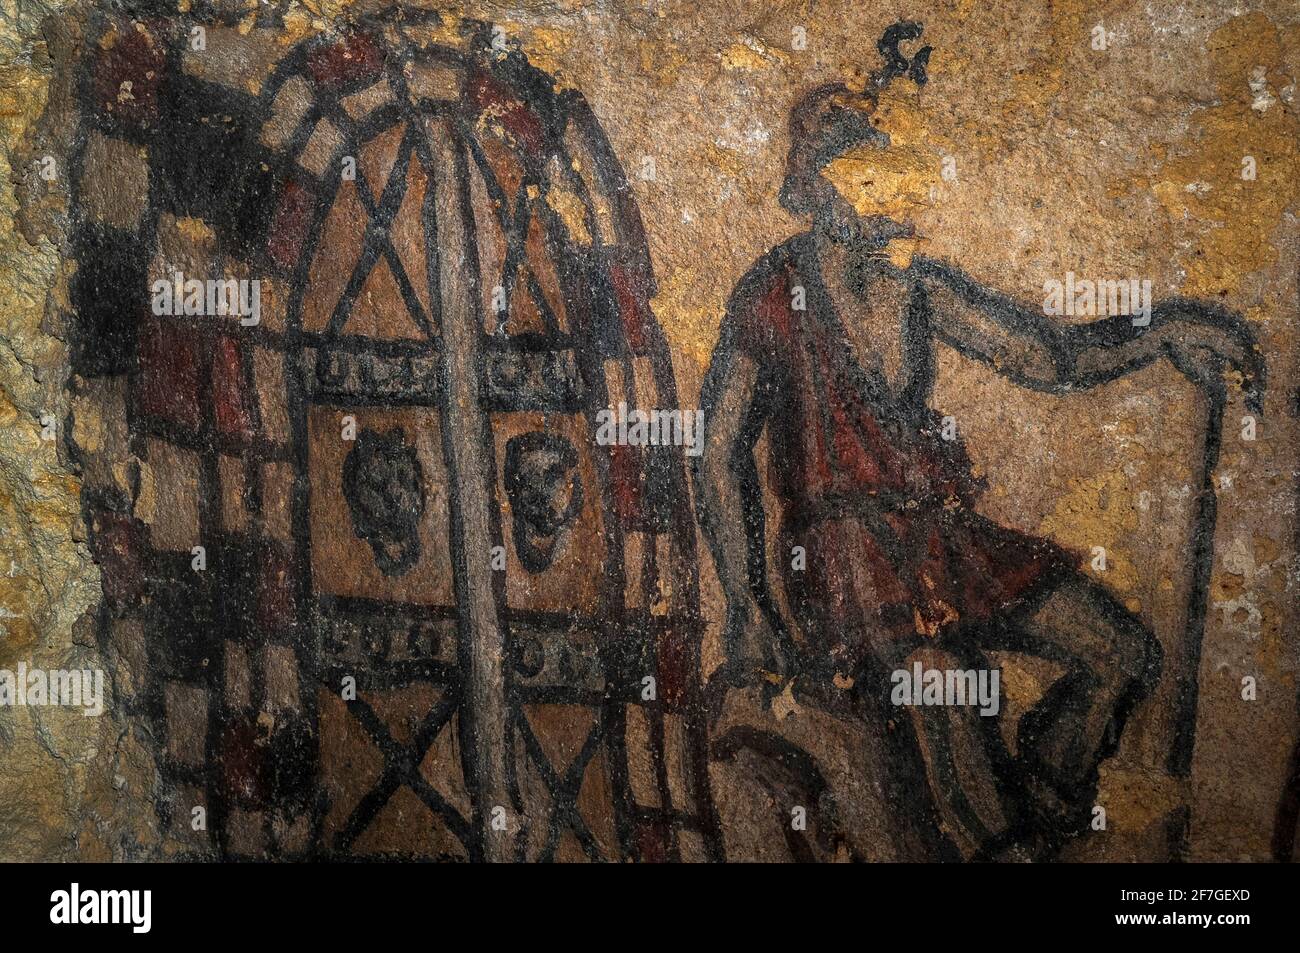 Il demone etrusco Charun si siede con una mano appoggiata sul lungo manico  del suo martello simbolico mentre custodisce l'ingresso dell'Underworld, In  questo particolare di un dipinto murale della fine del III